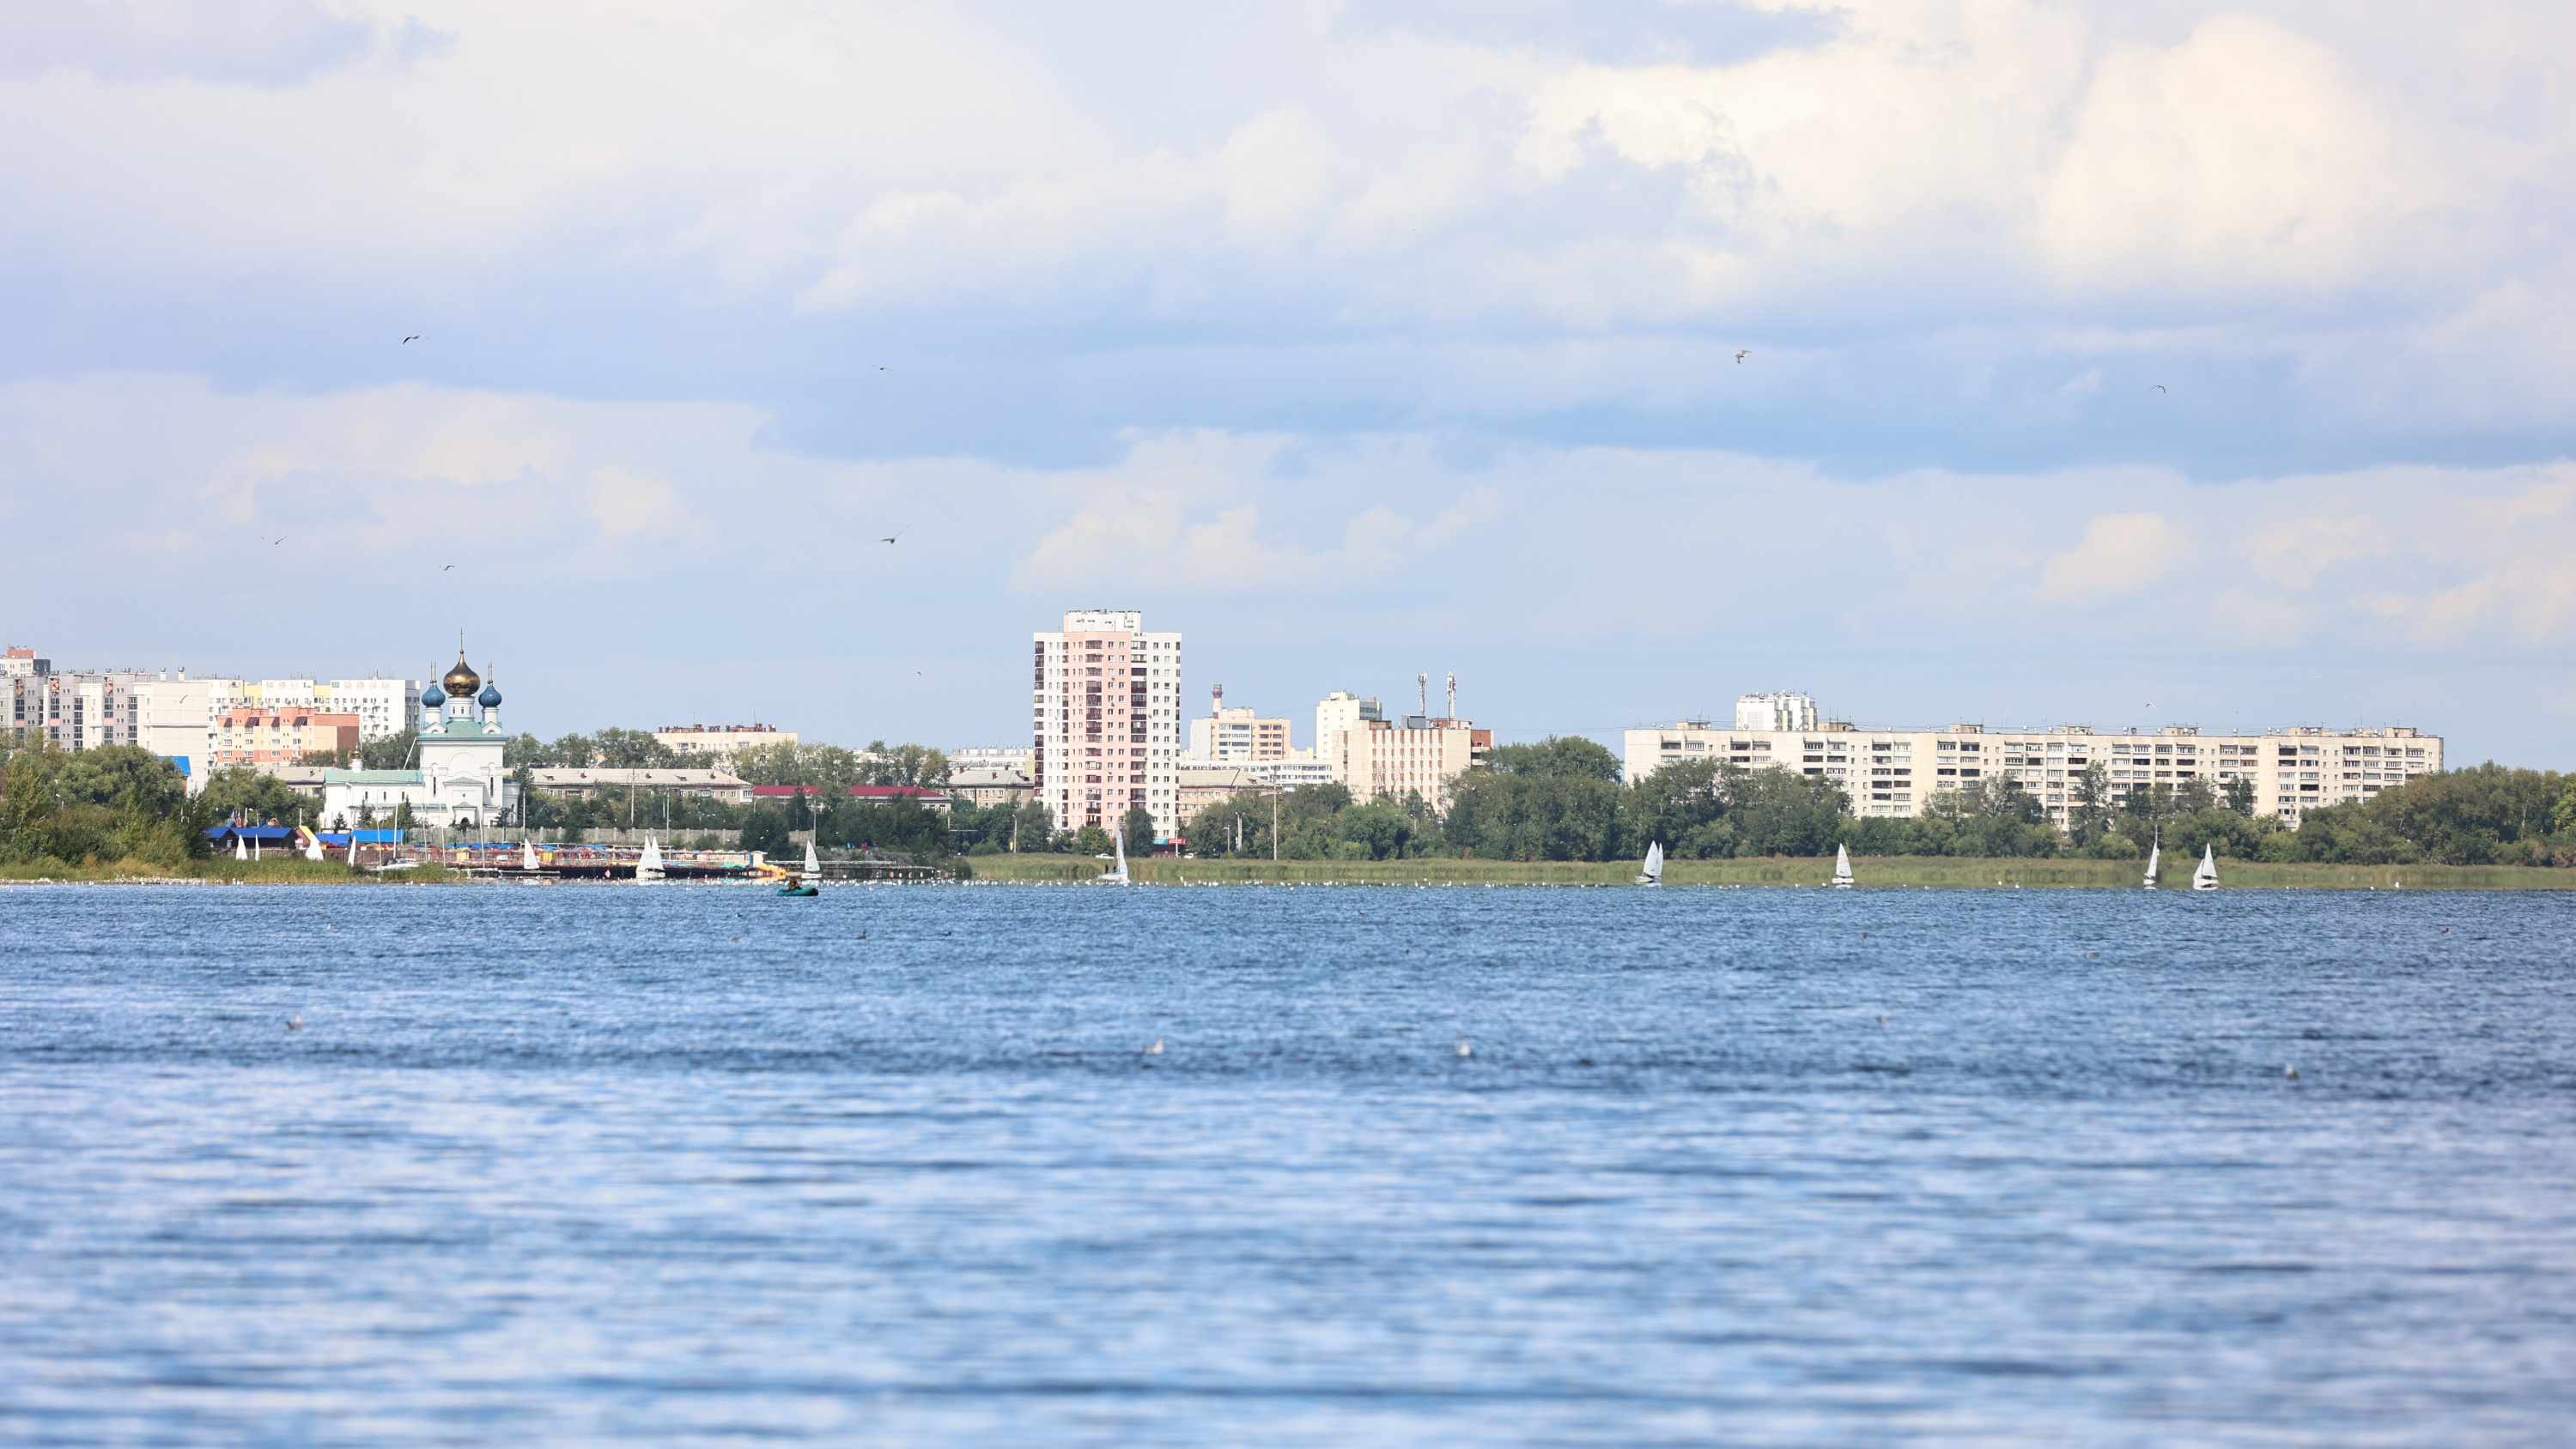 Закрытый пляж, вид на яхты и соседство с VIP-отелями: изучаем СНТ на берегу озера в Челябинске